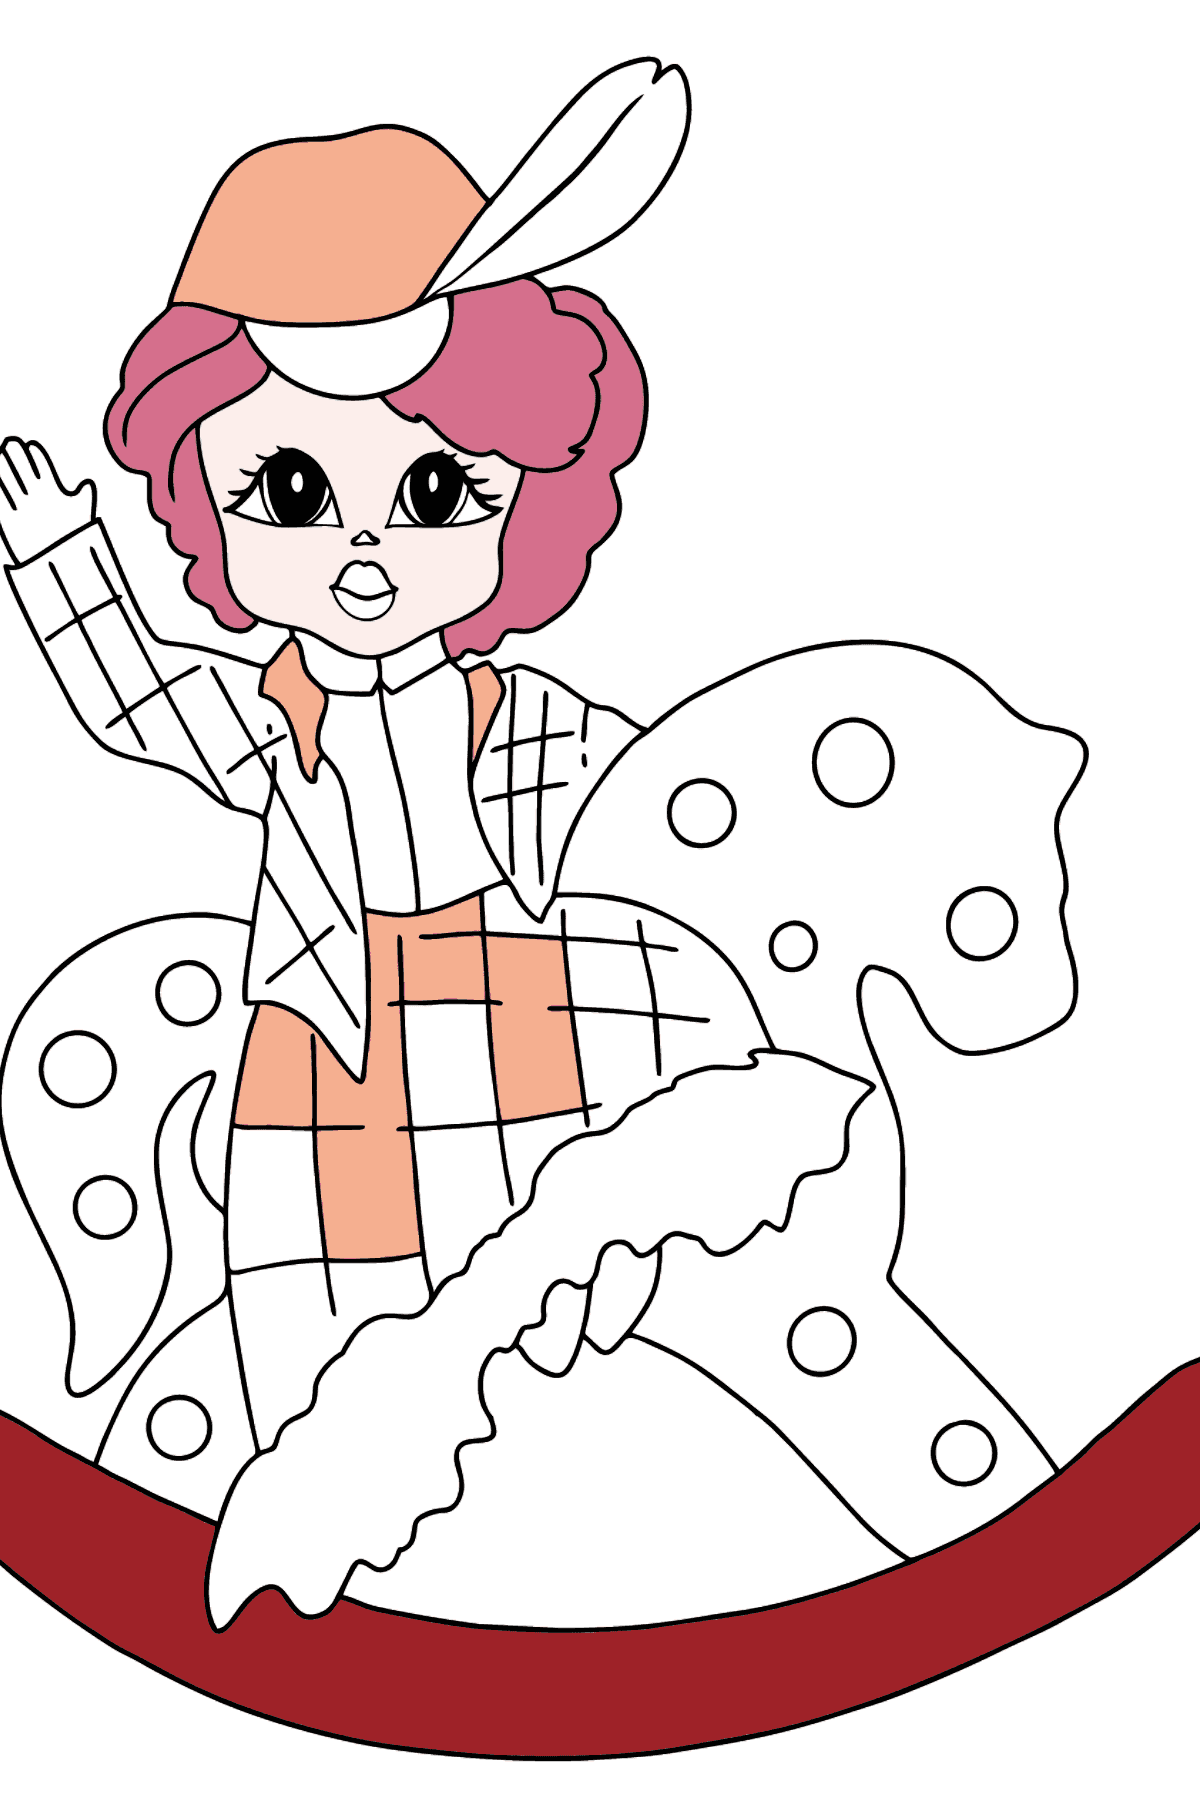 Dibujo para Colorear - Una Princesa en un Caaballo - Para Niñas - Dibujos para Colorear para Niños